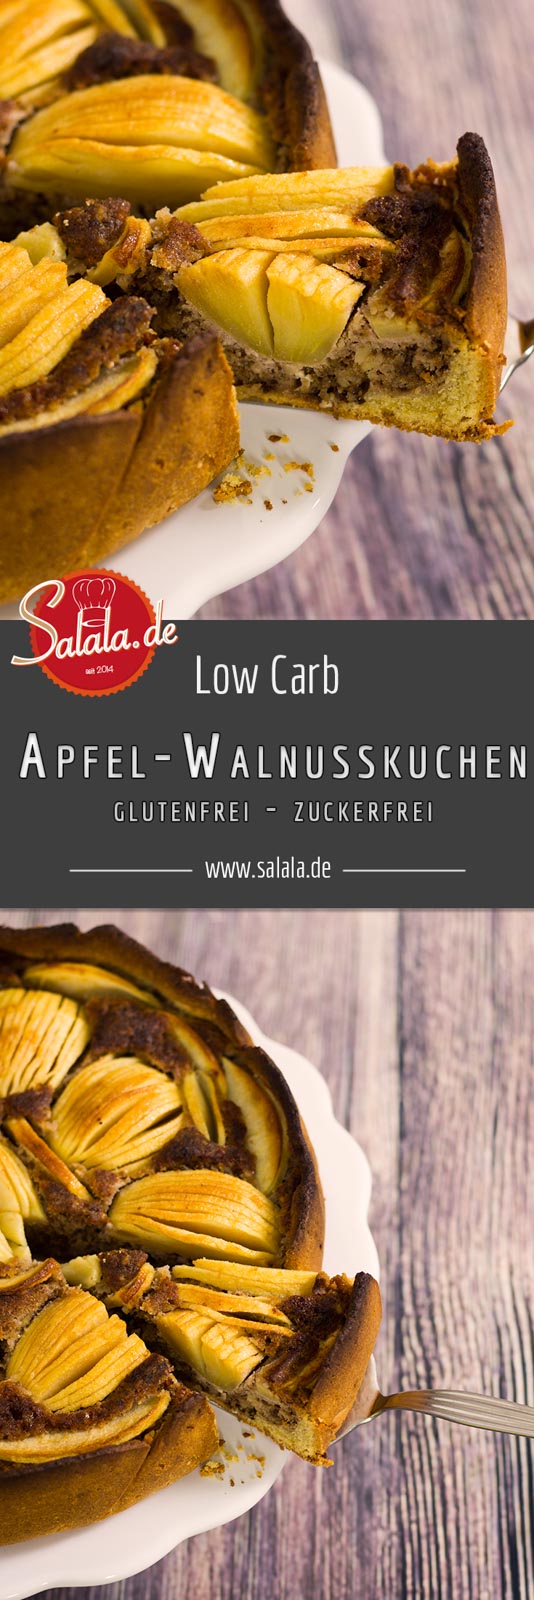 Low Carb Apfel Walnusskuchen - by salala.de - Rezept Low Carb ohne Zucker ohne Mehl glutenfrei Rührteig Mürbteig